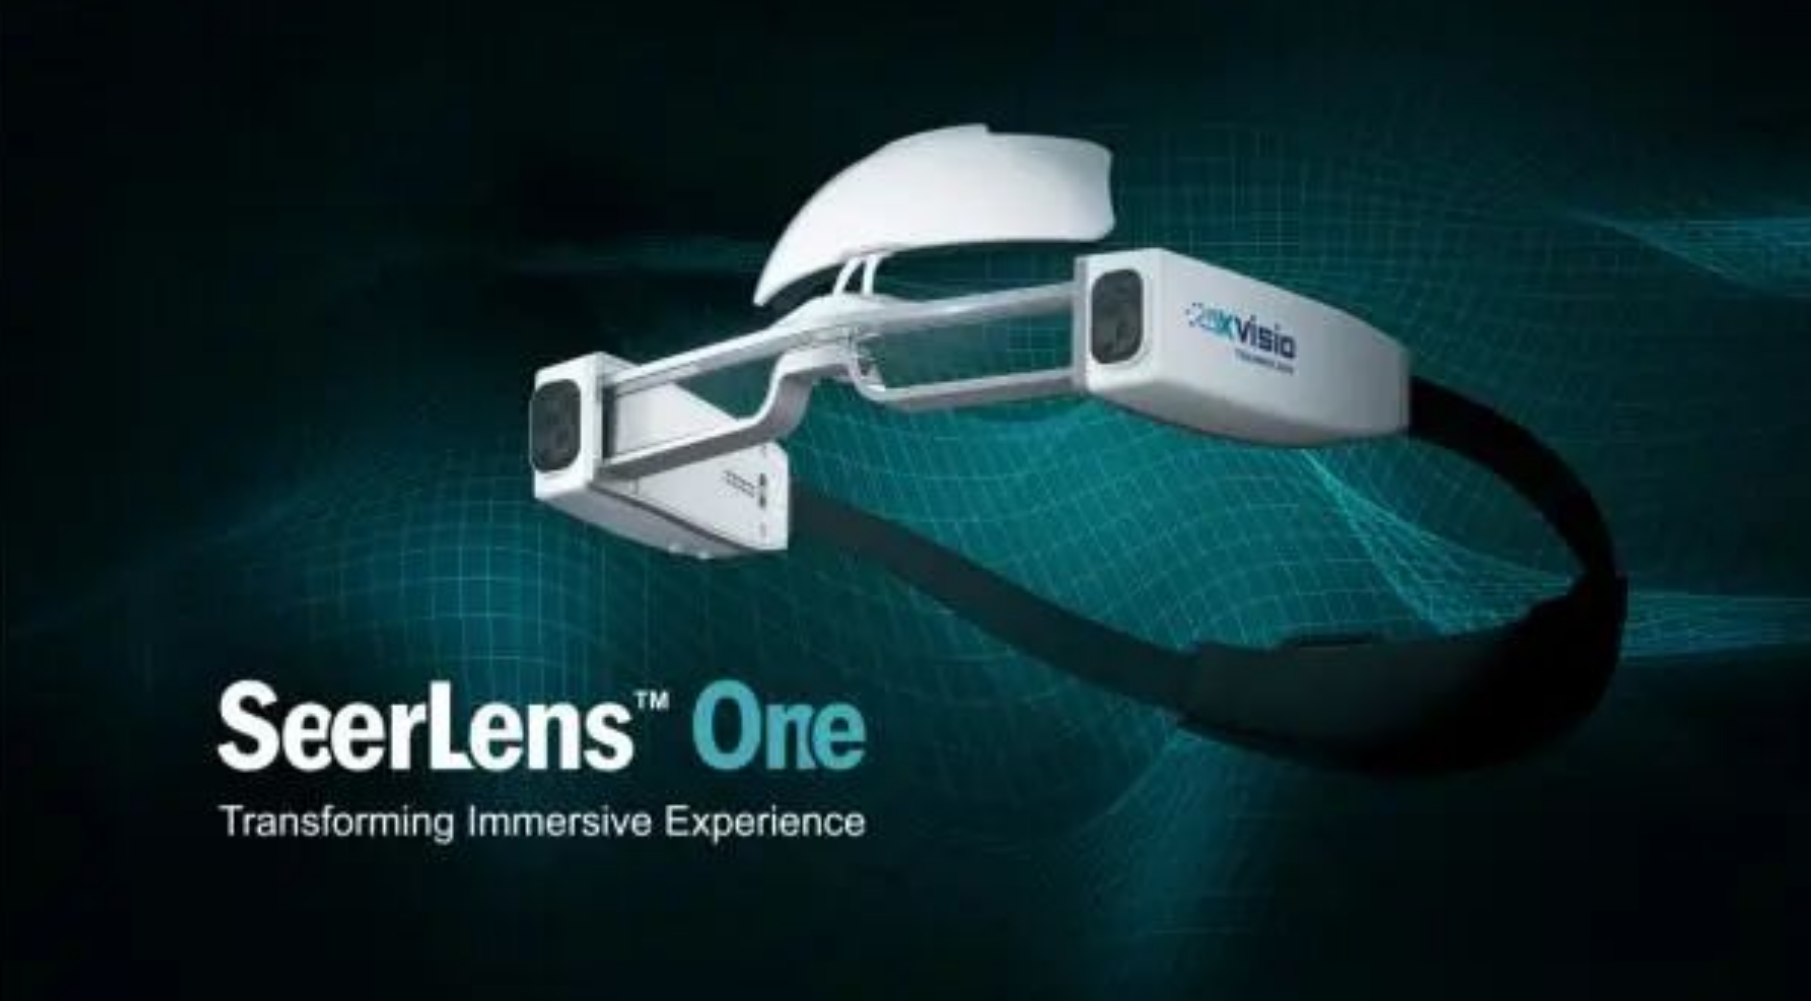 诠视科技的轻量化6DoF AR眼镜 SeerLens One。